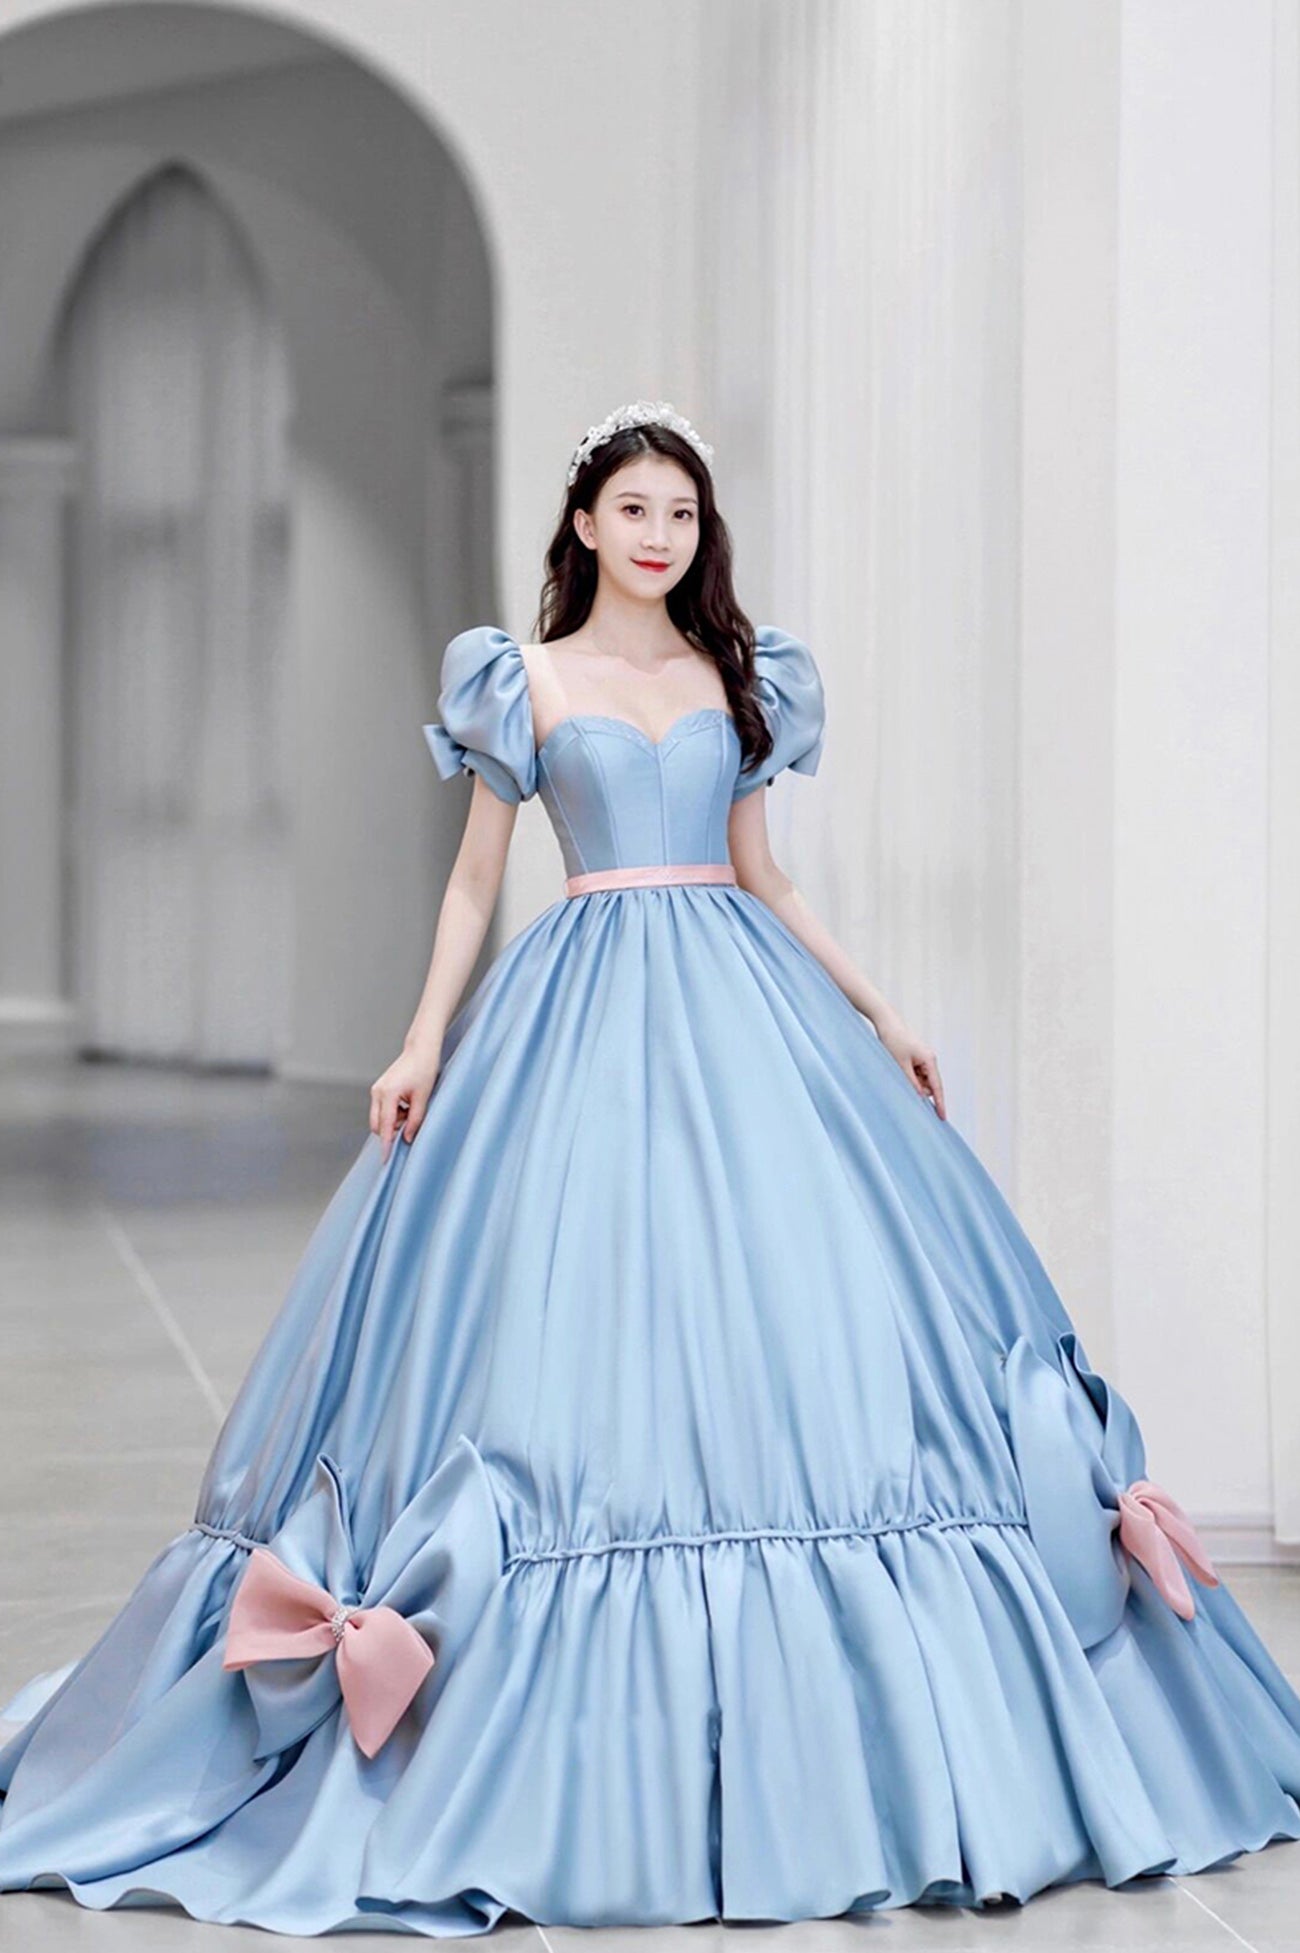 Blue Satin Long Princess Dress, Cute Short Sleeve Ball Gown Sweet 16 Dress